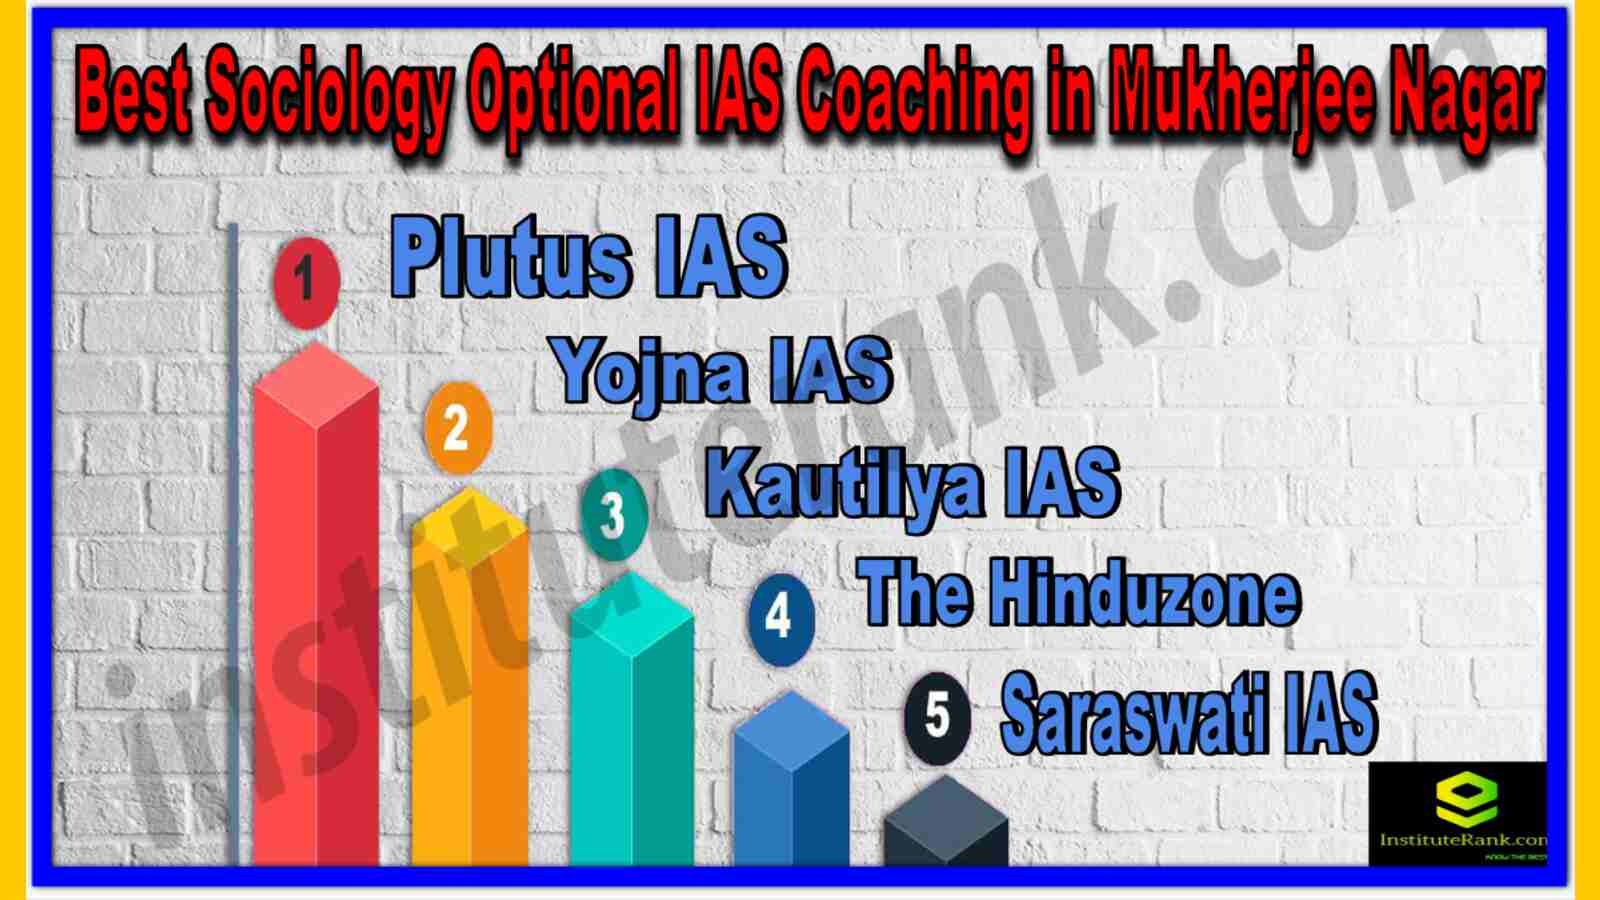 Best Sociology Optional IAS Coaching in Mukherjee Nagar